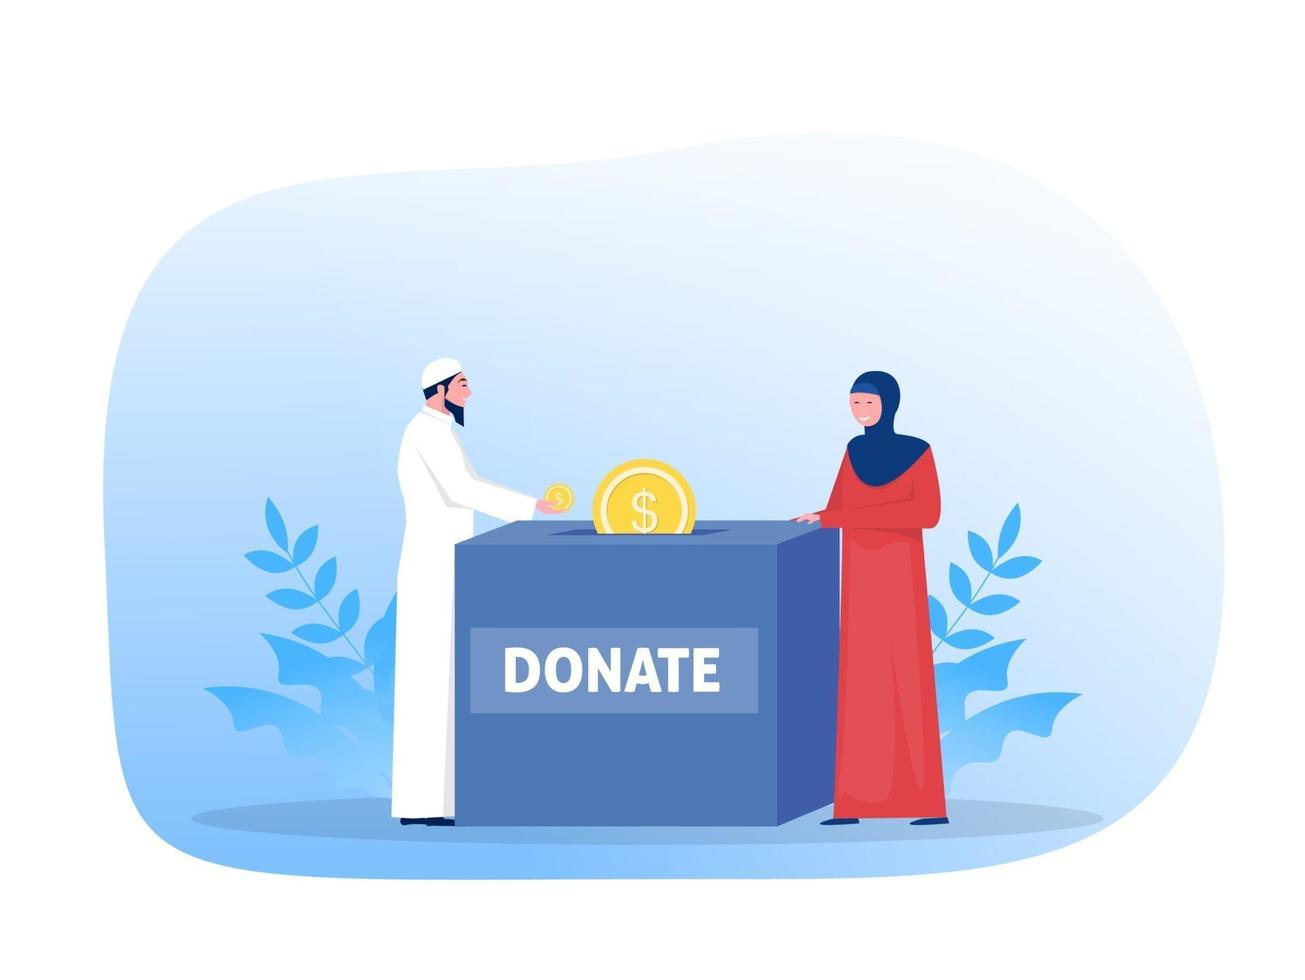 los musulmanes donan para pagar zakat en el vector ilustrador del concepto de ramadán